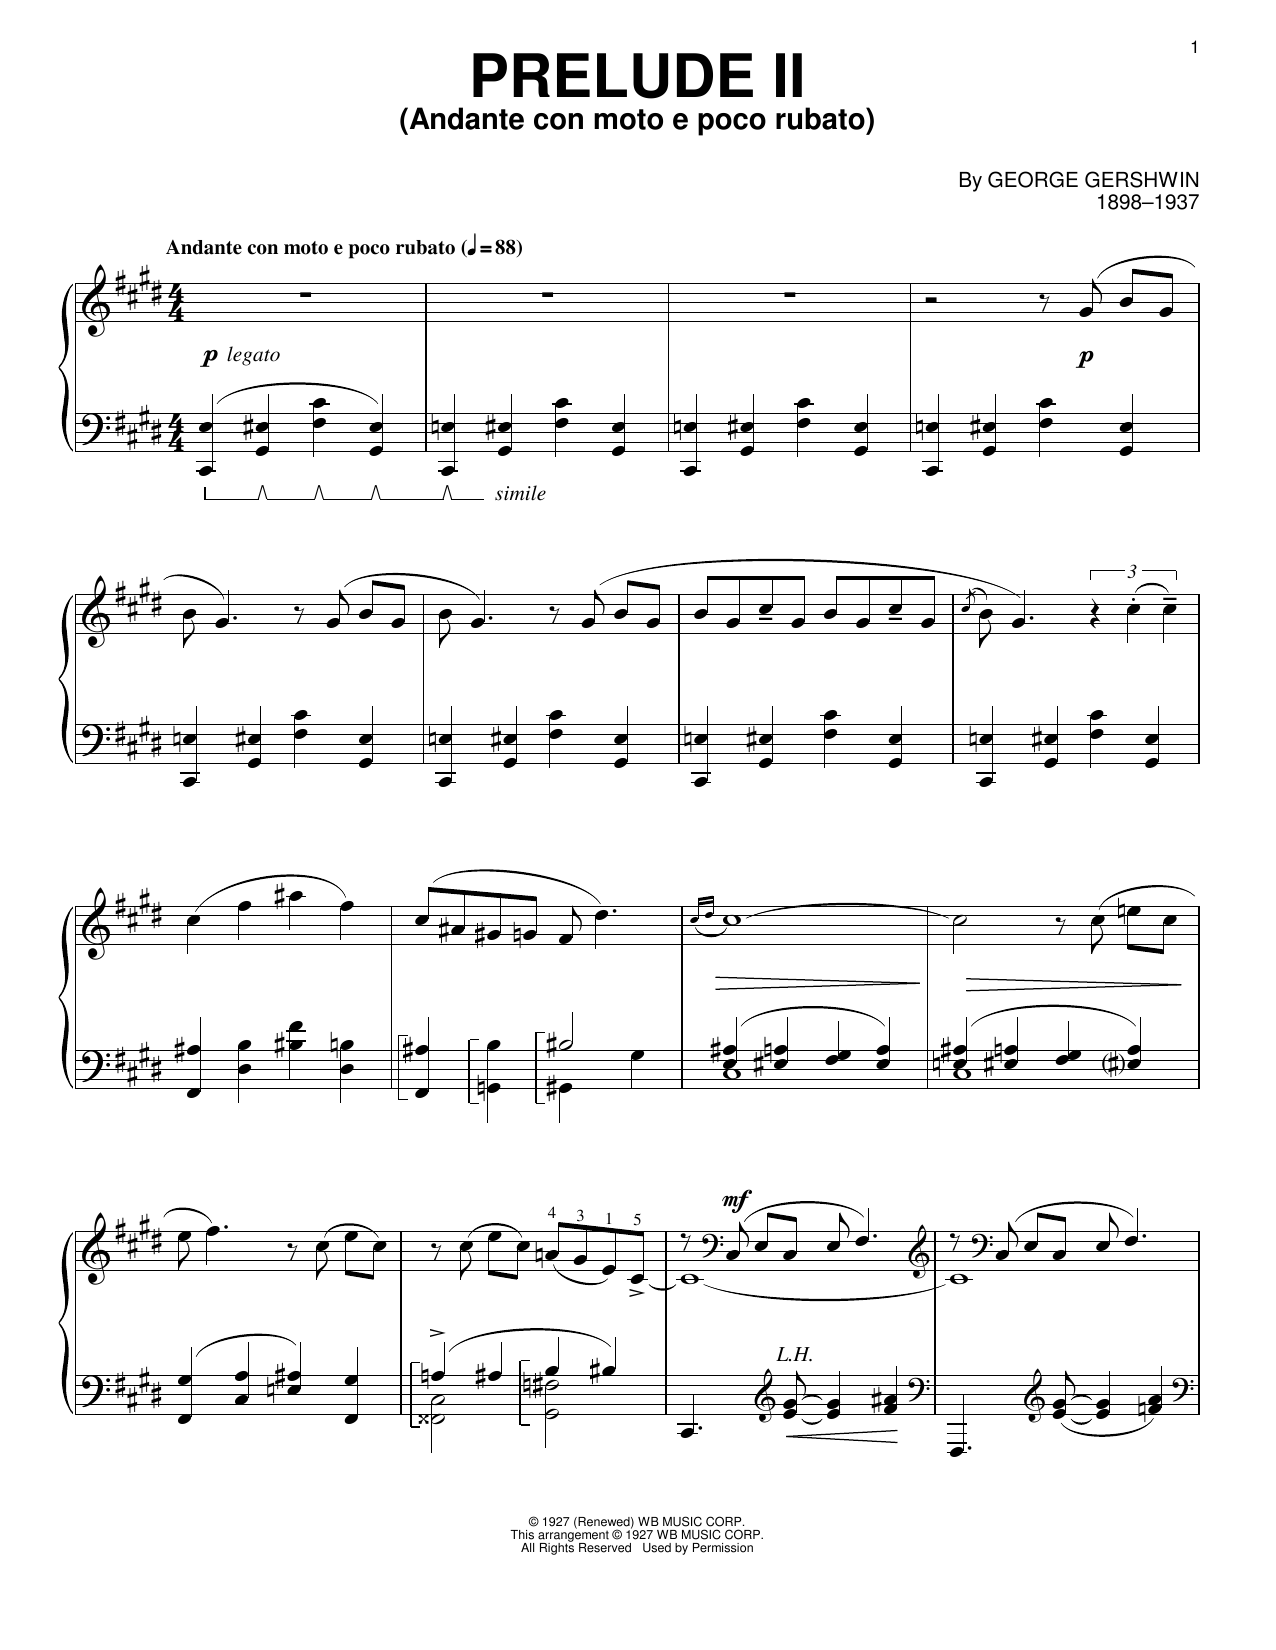 George Gershwin Prelude II (Andante Con Moto E Poco Rubato) Sheet Music Notes & Chords for Cello and Piano - Download or Print PDF